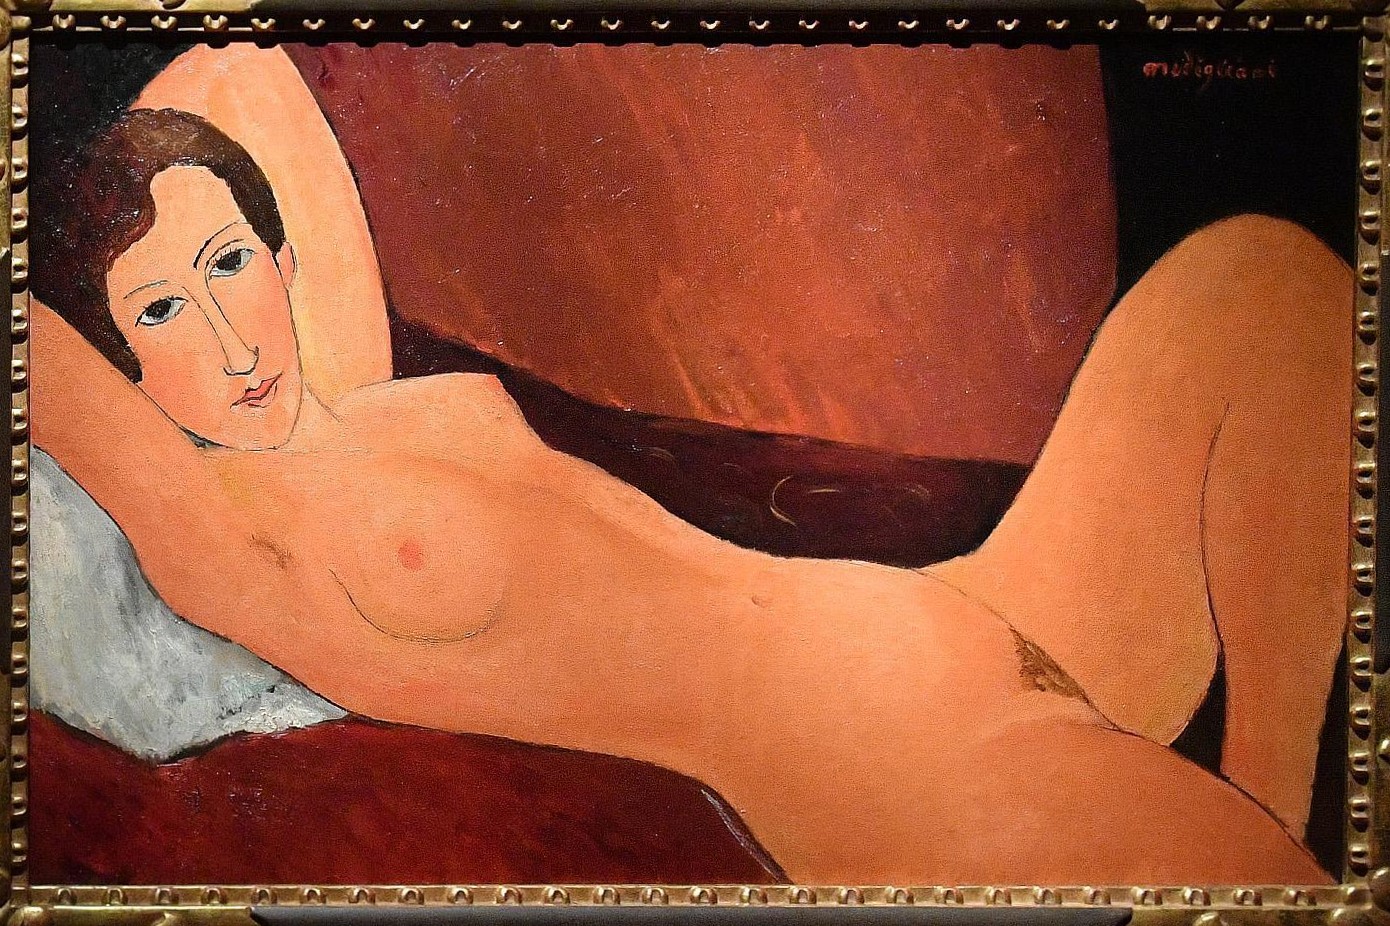 Il Nudo disteso attribuito a Modigliani nella mostra di Genova del 2017 ma contestato come falso